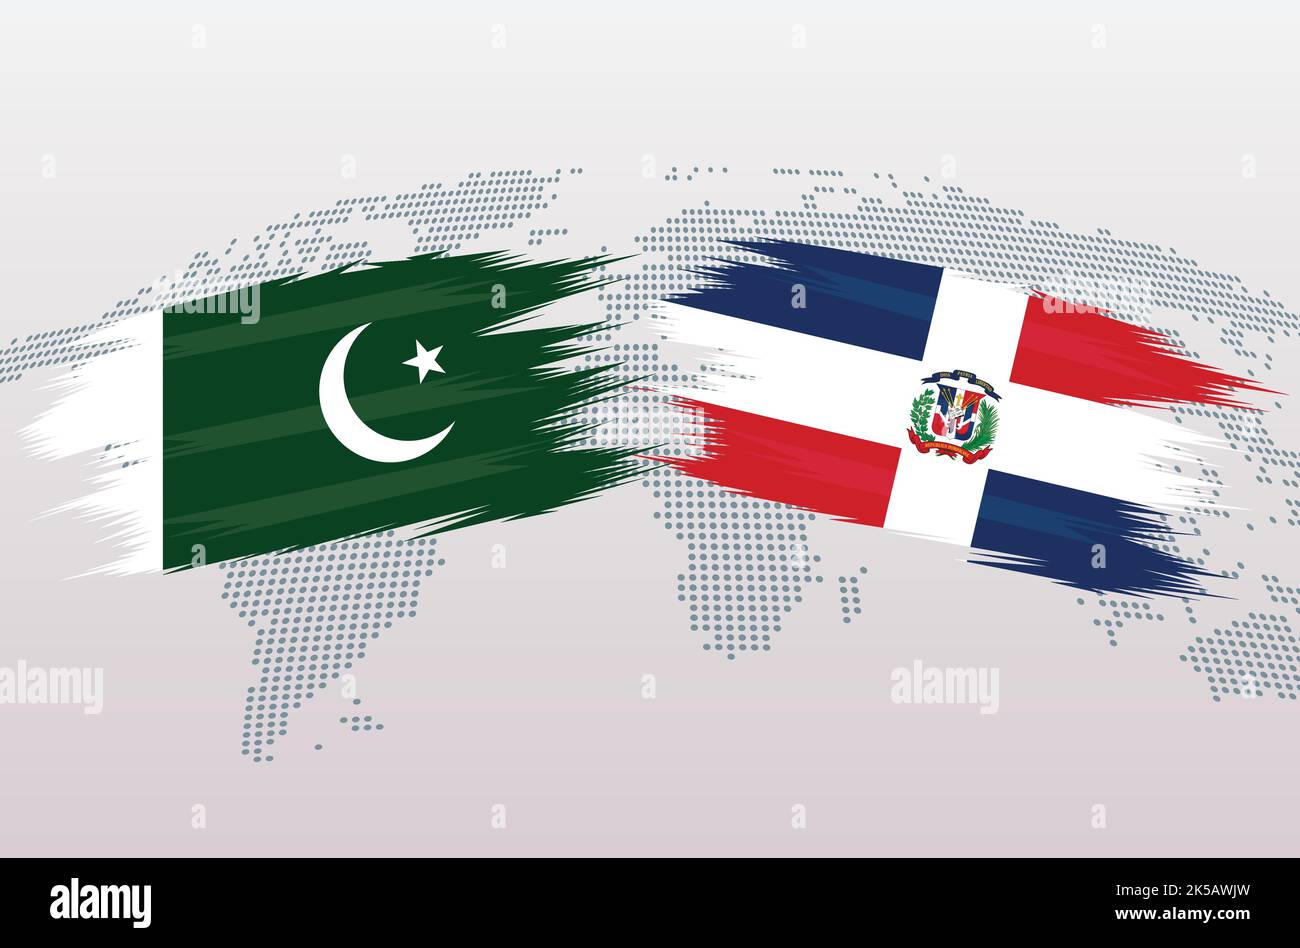 Bandiere del Pakistan vs Repubblica Dominicana. Repubblica islamica del Pakistan vs bandiere dominicane, isolate su sfondo grigio della mappa del mondo. Illustrazione vettoriale. Illustrazione Vettoriale